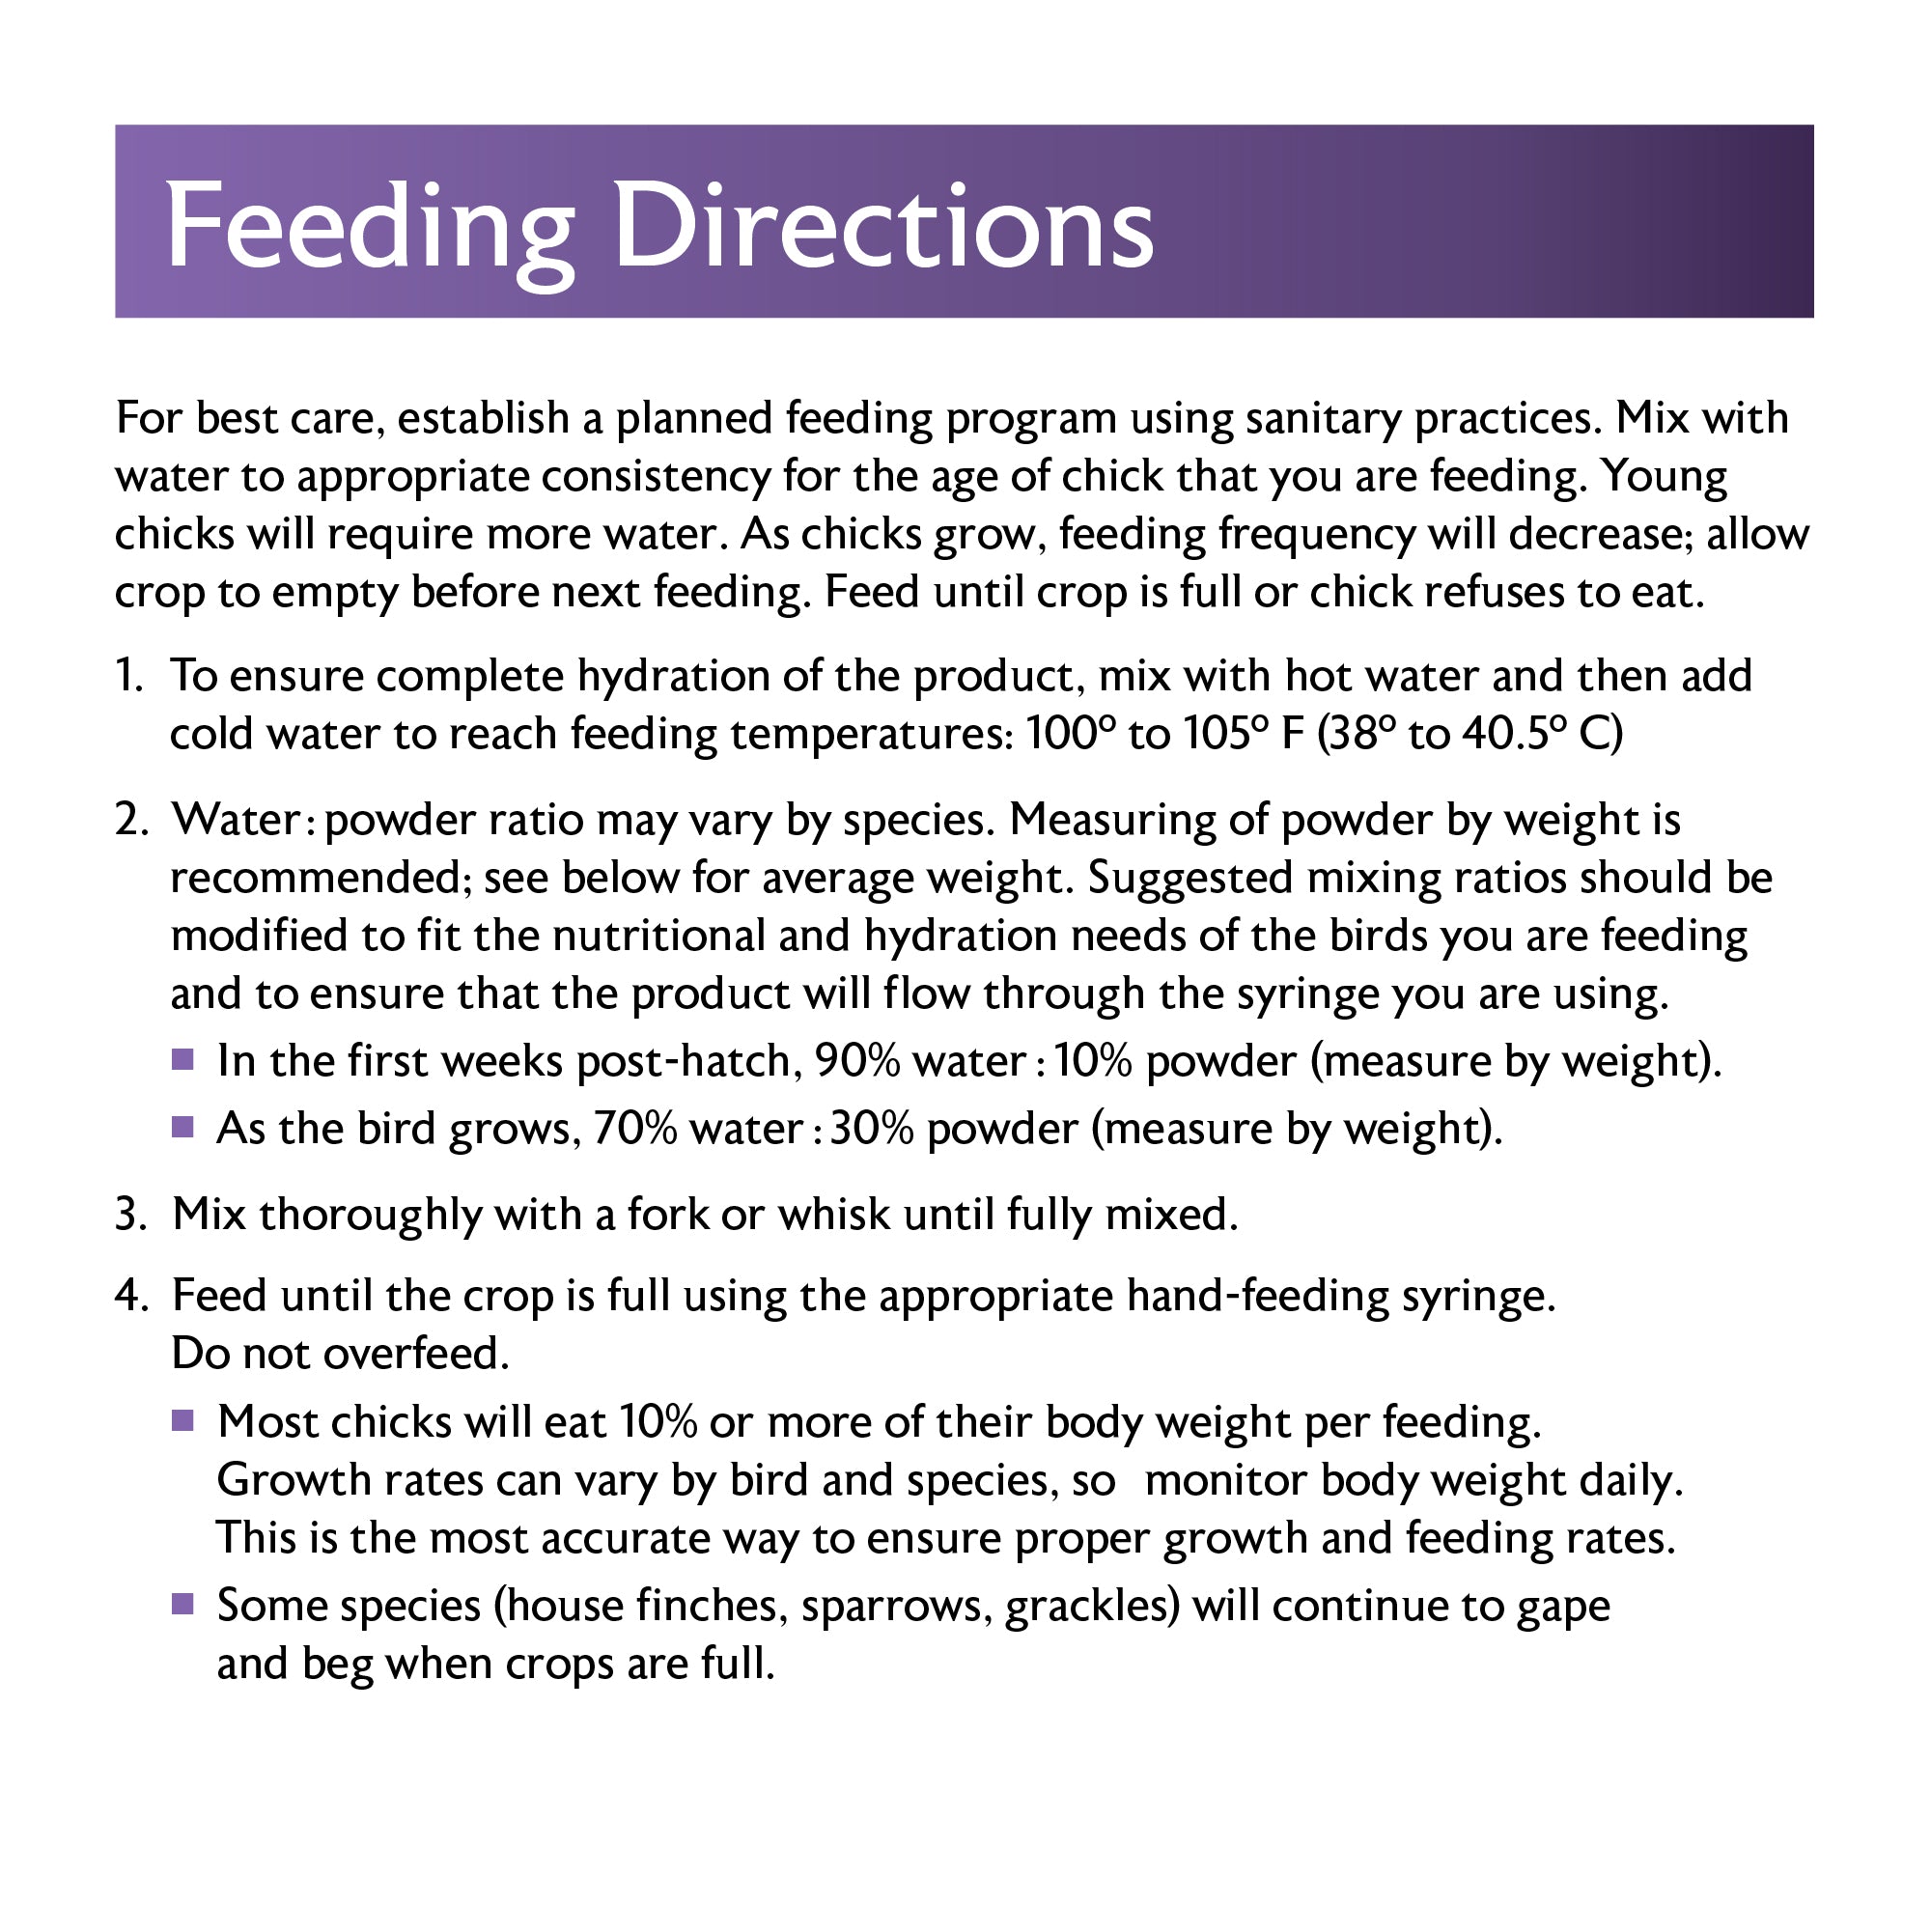 Mazuri® Songbird Hand Feeding Formula